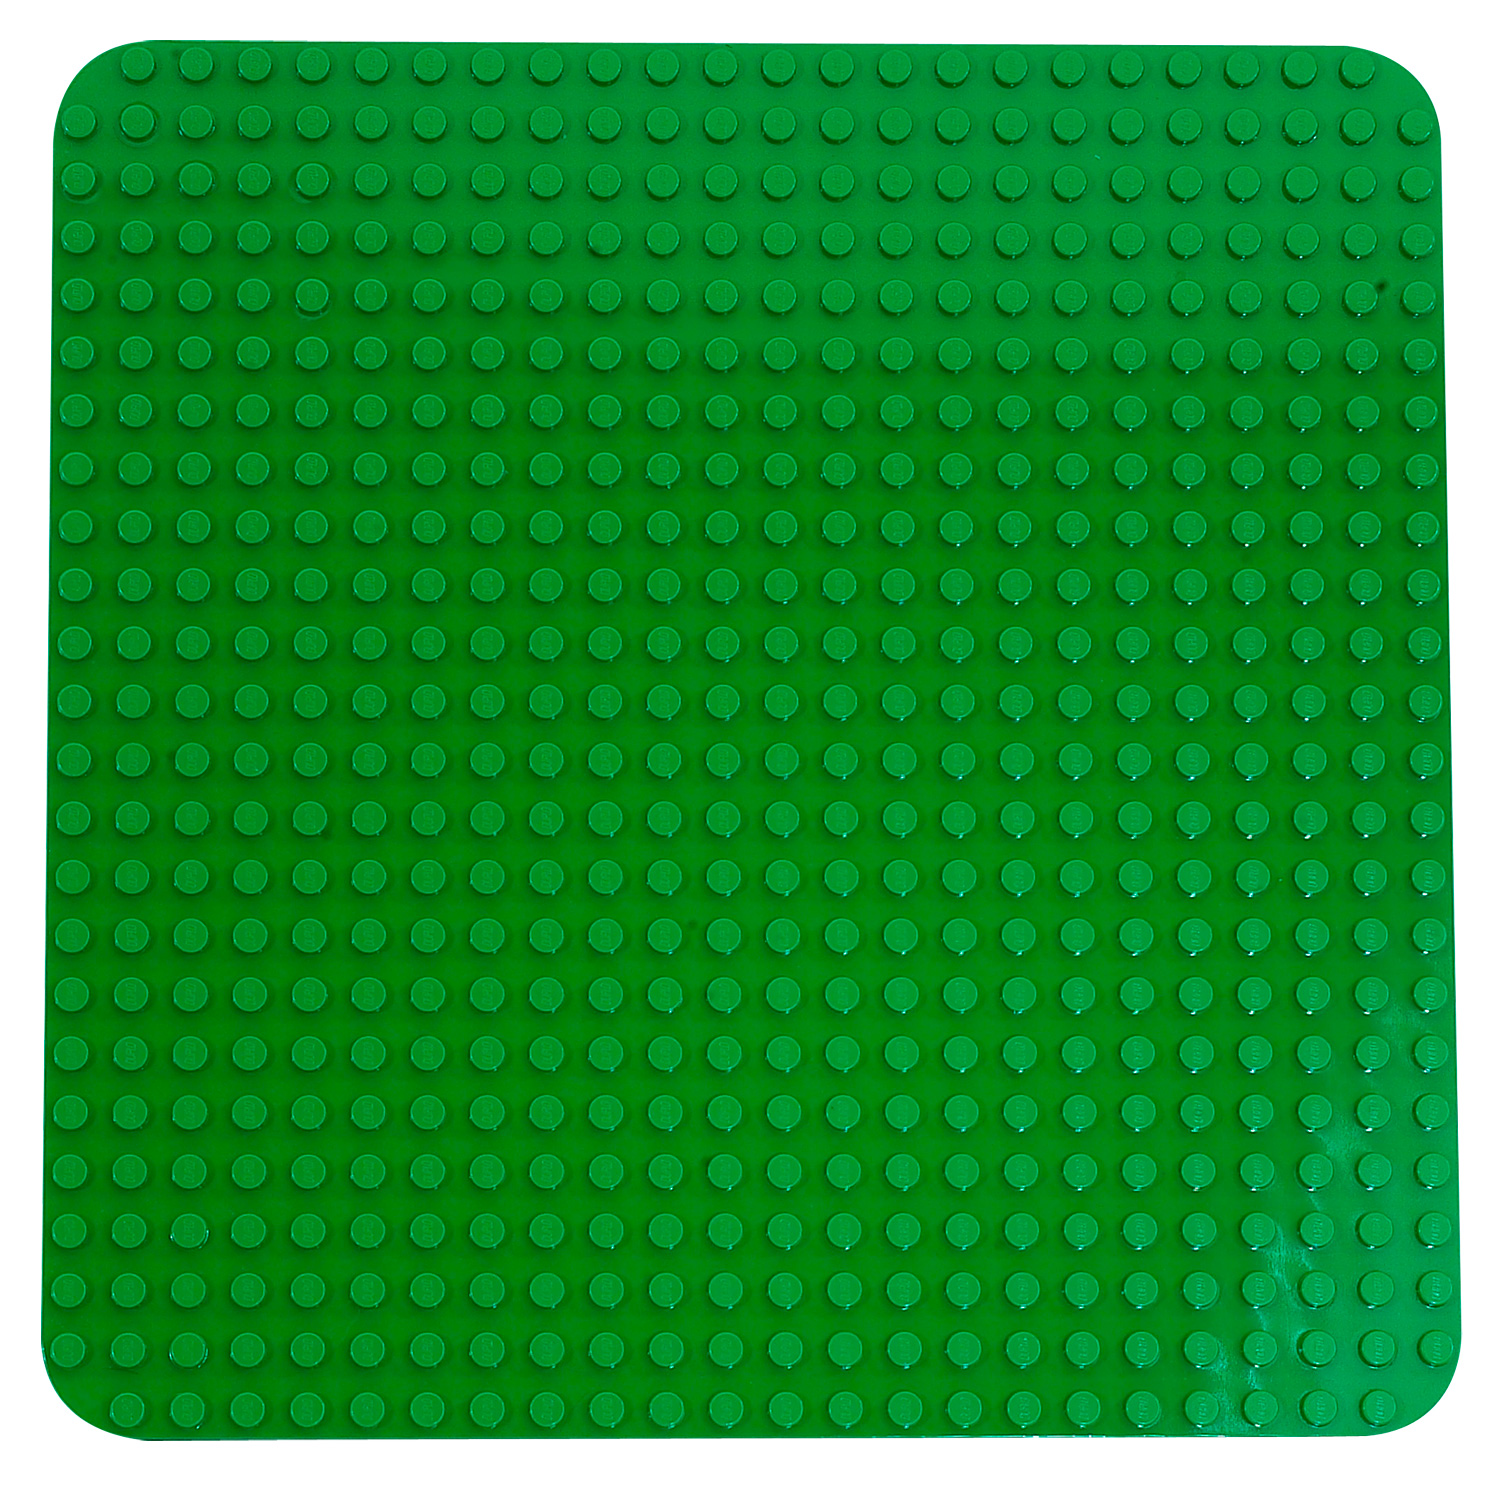 Lego 2304 Duplo : Plaque de base grand modèle verte - Jeux et jouets LEGO ®  - Avenue des Jeux